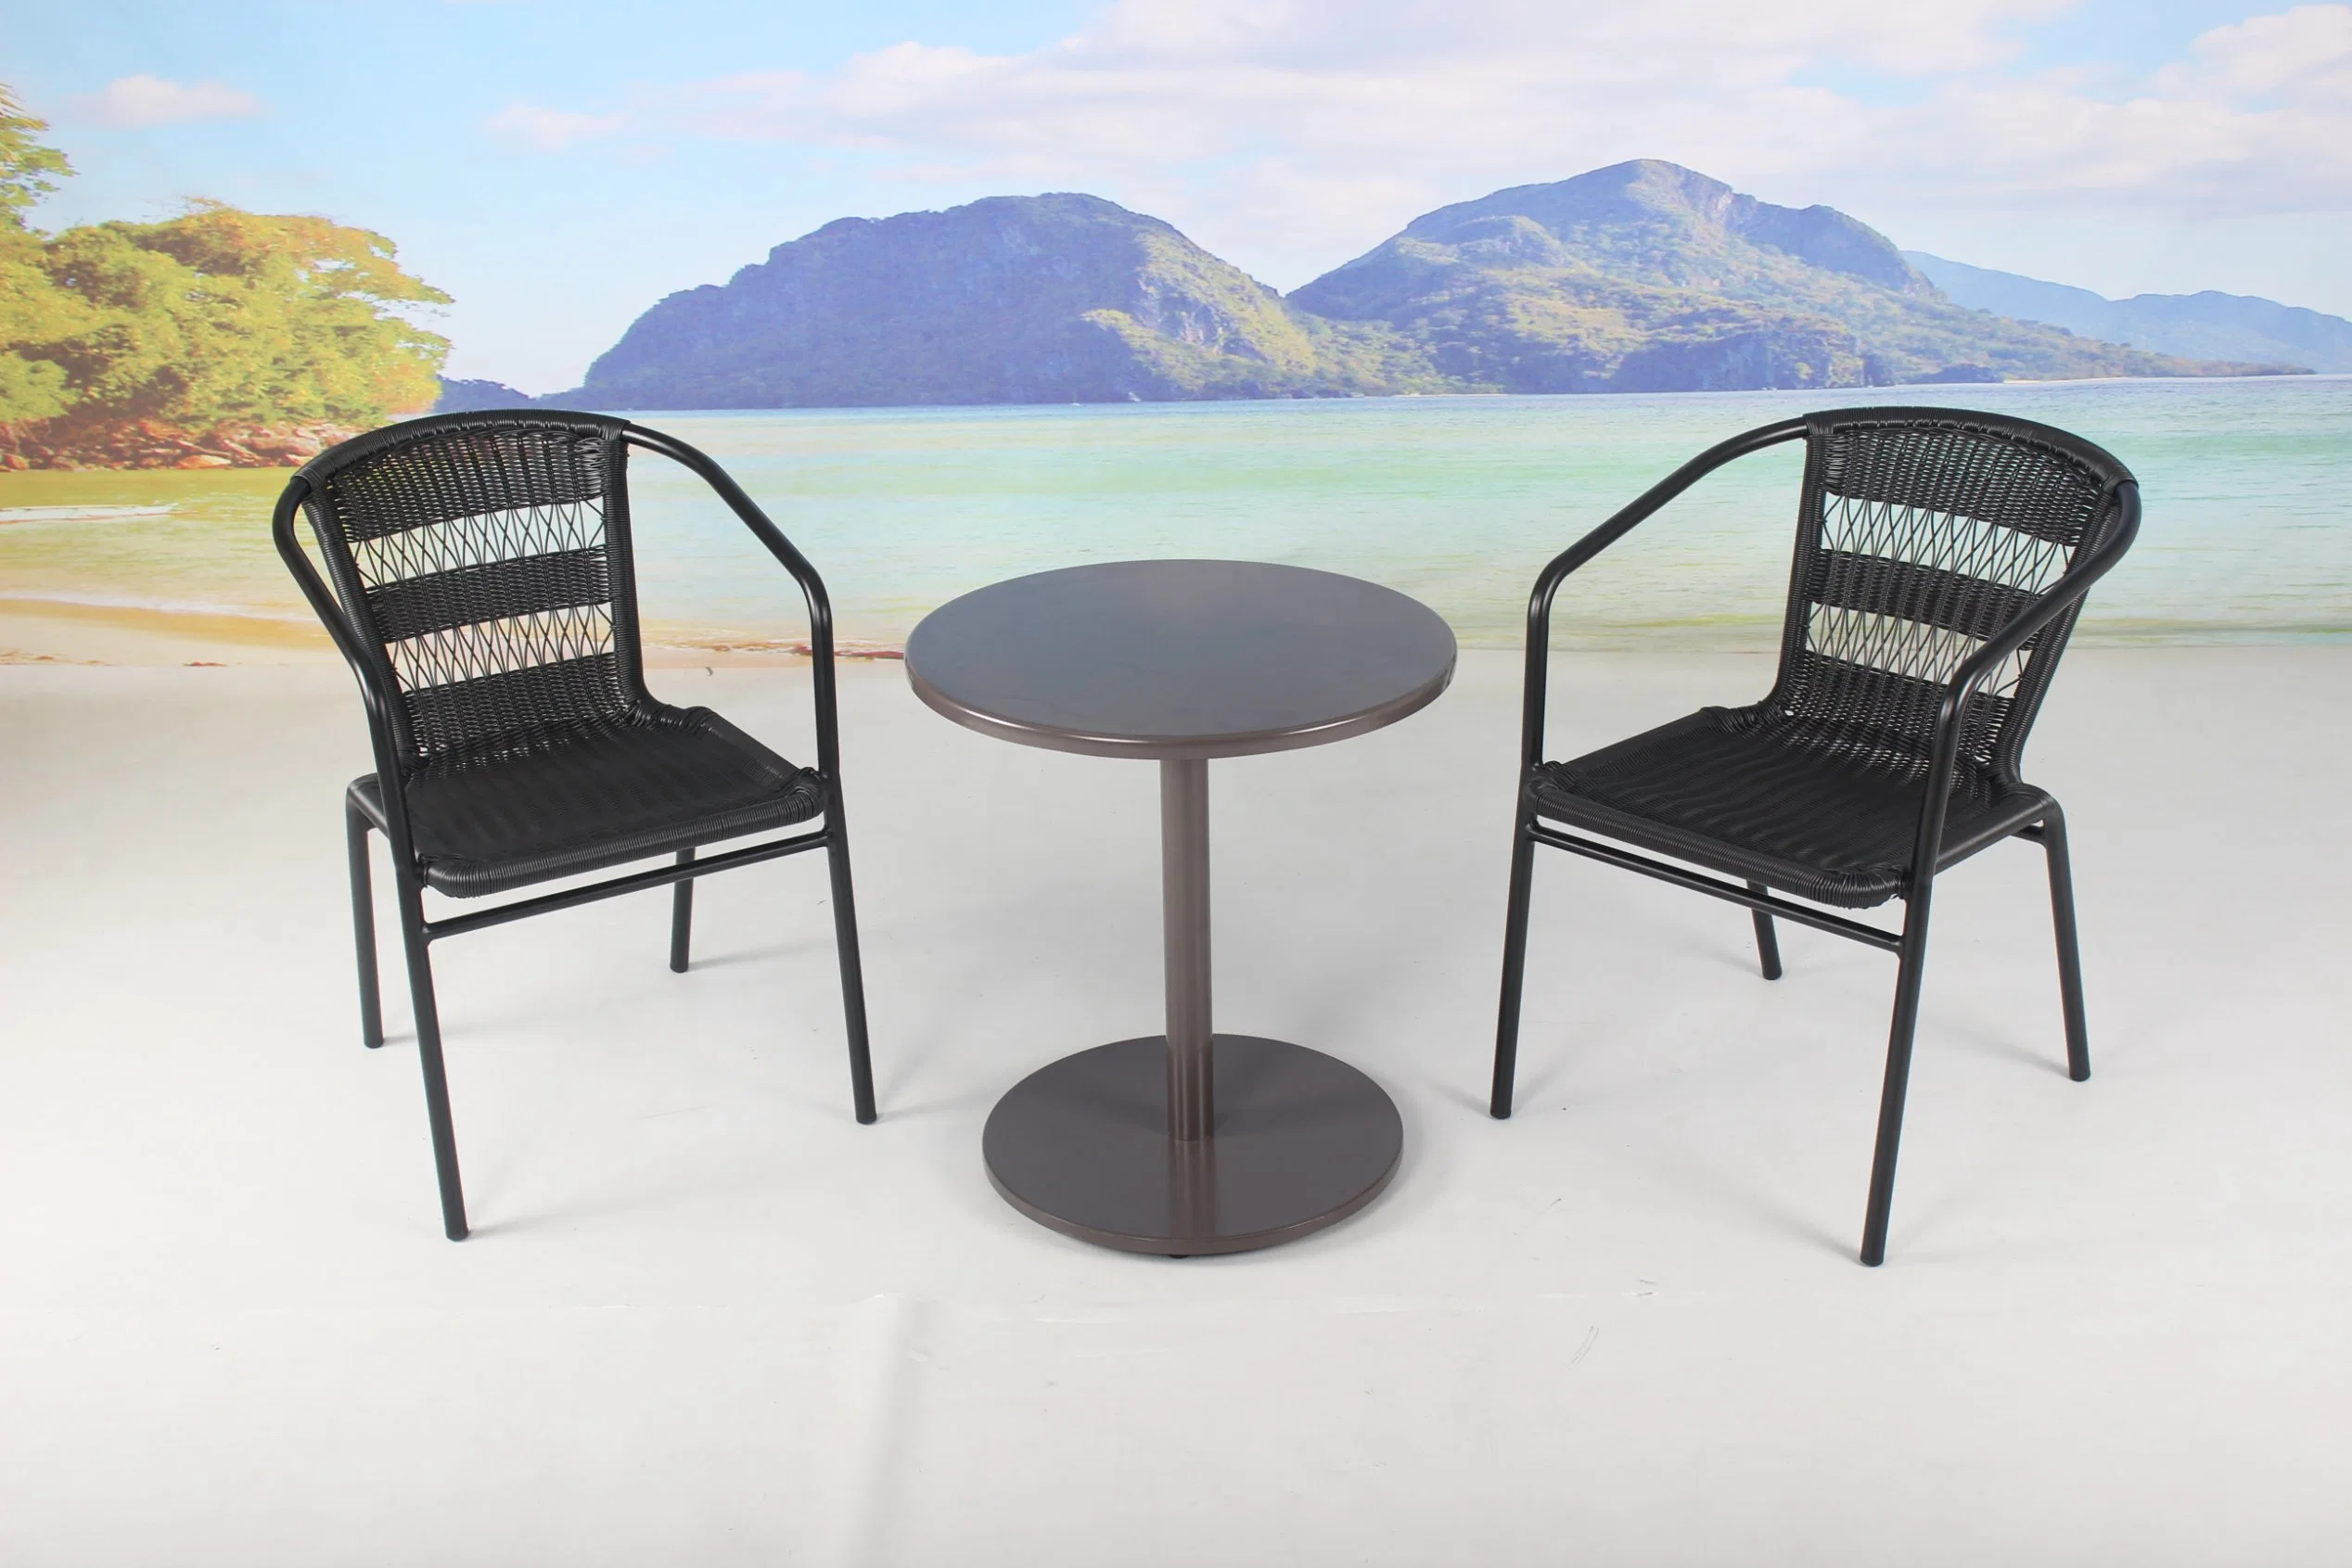 Heißer Verkauf 3 Stück Terrasse im Freien Balkon Couchtisch und Rattan Stuhl Möbel Set